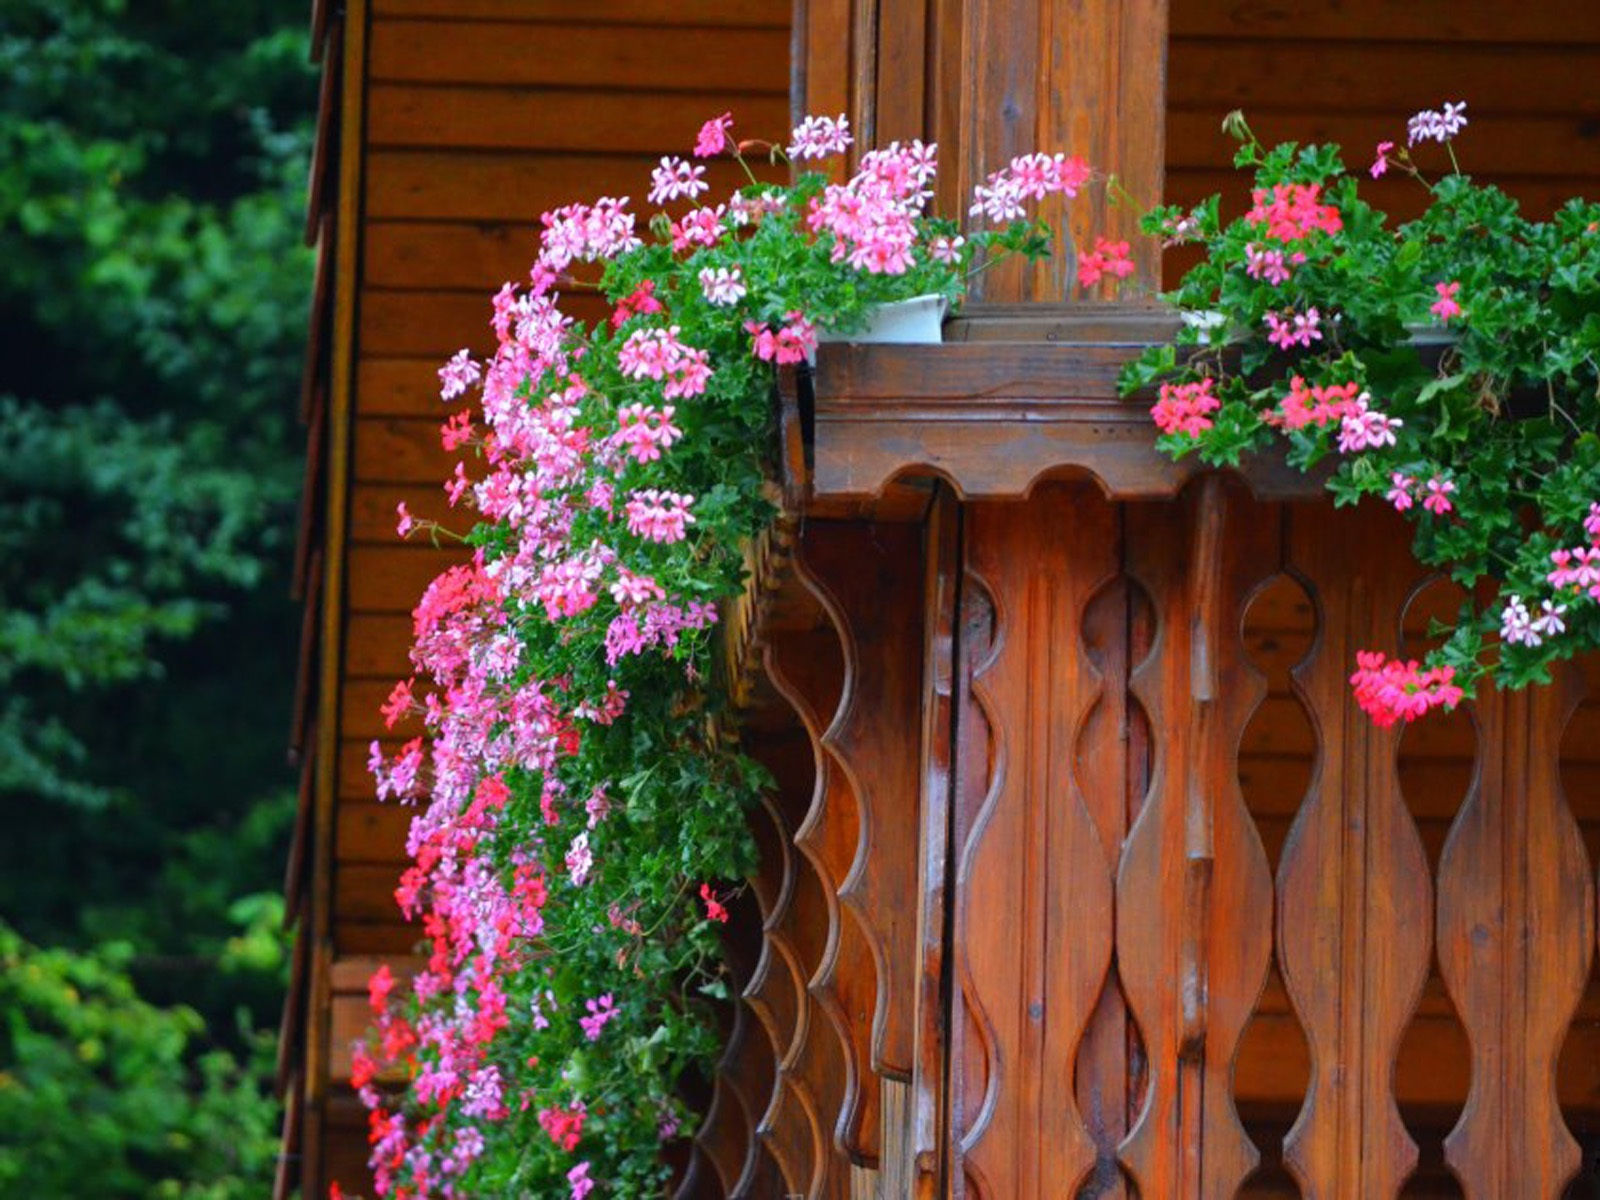 Mê mẩn những ngôi nhà có ban công đầy hoa tuyệt đẹp